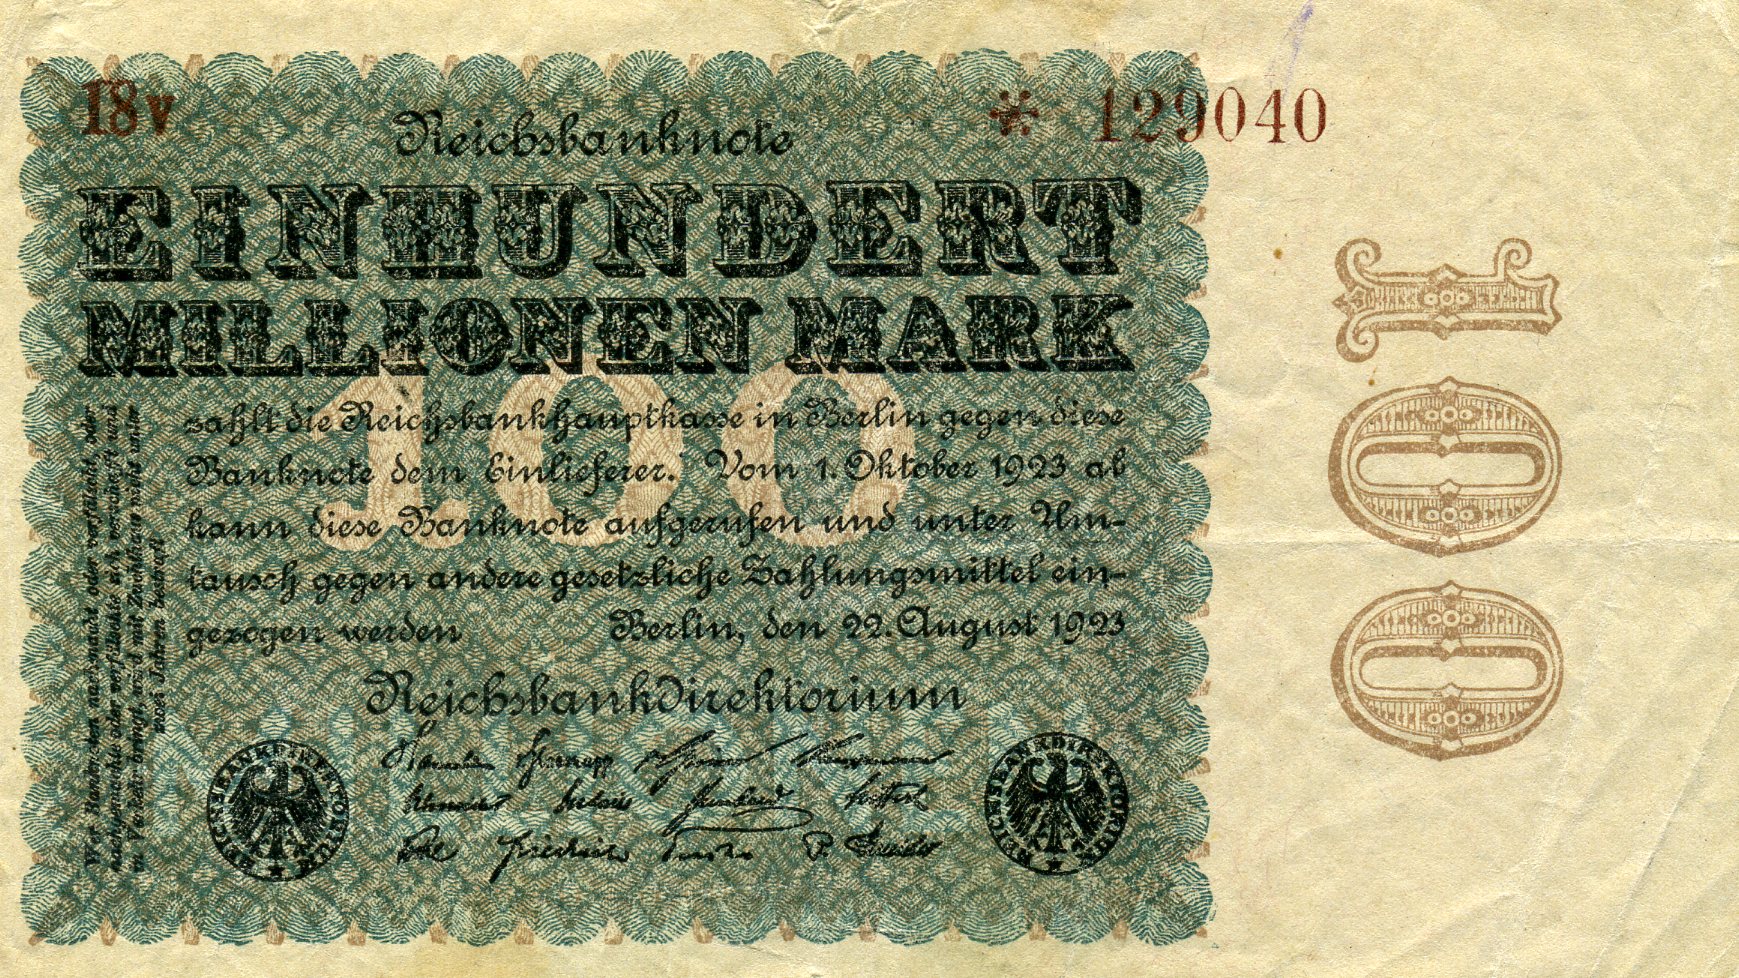 100 миллионов марок 22 августа 1923 года. Реферат Рефератович.